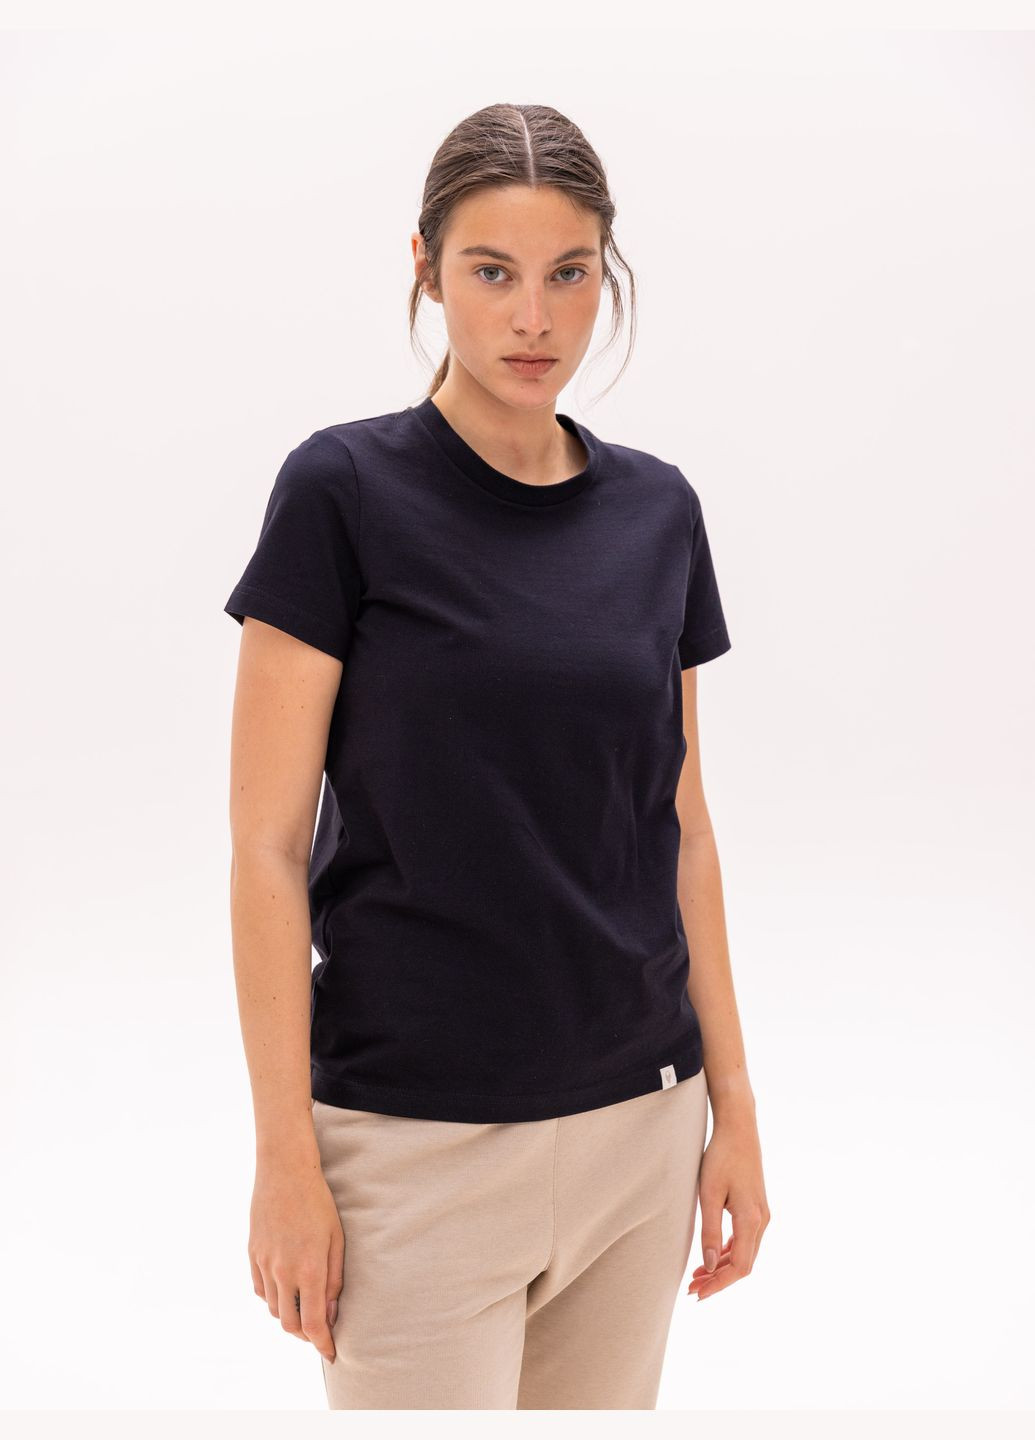 Черная всесезон футболка базовая женская с коротким рукавом Роза